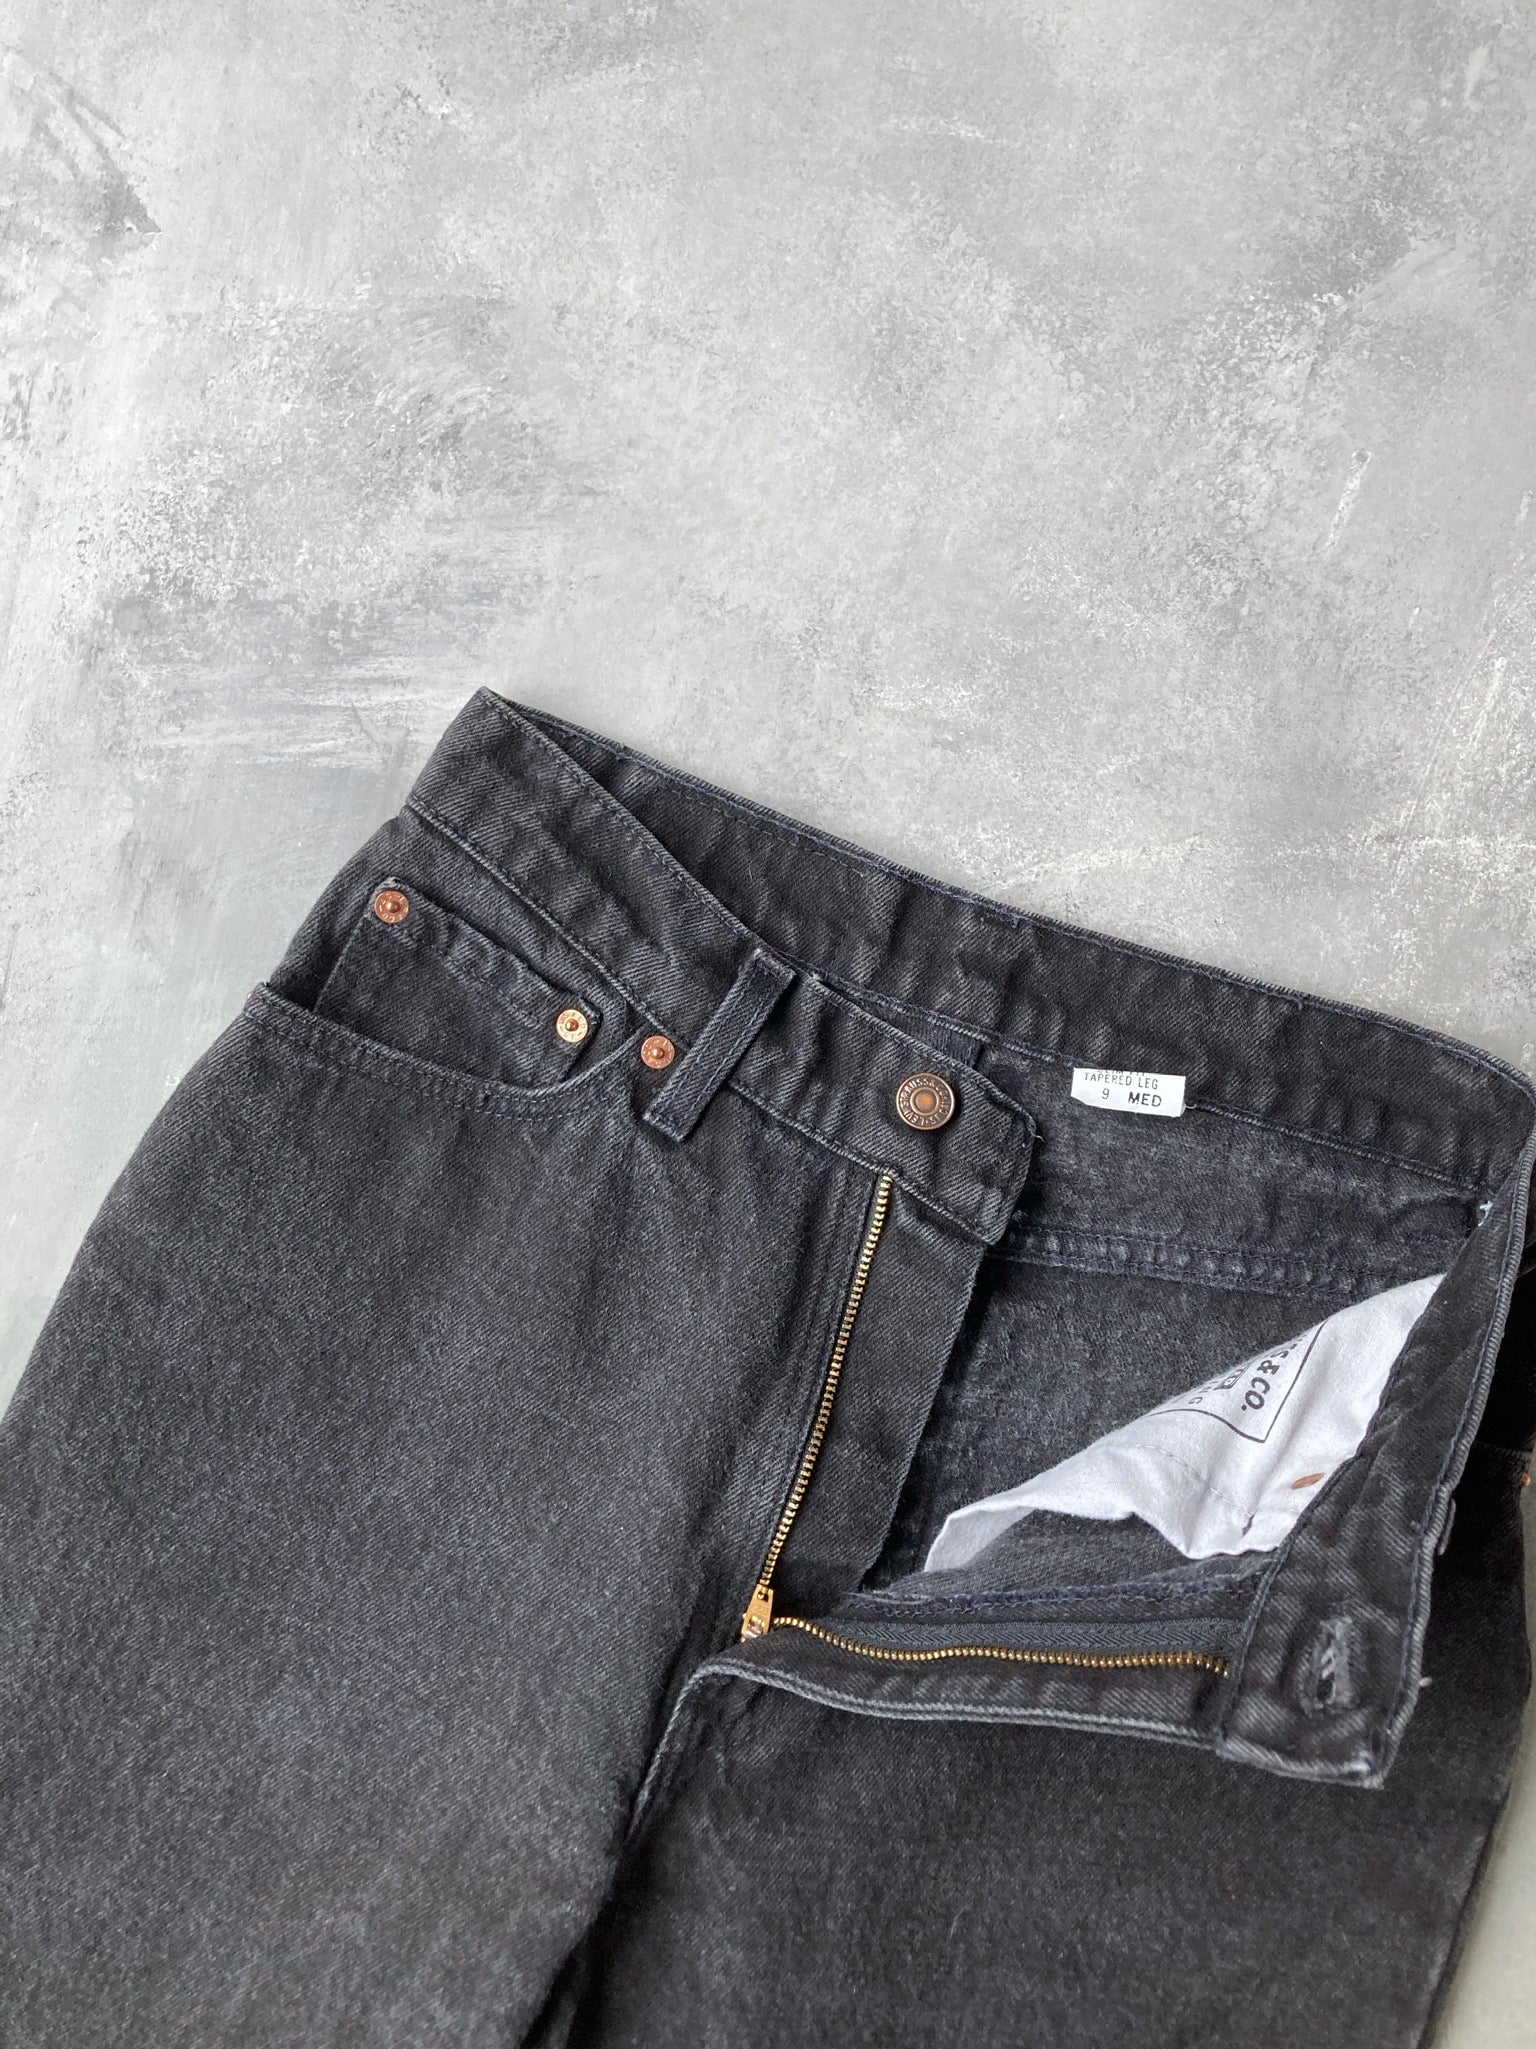 Levi's 512 Slim Fit Jeans 90's- Size 0 – Lot 1 Vintage